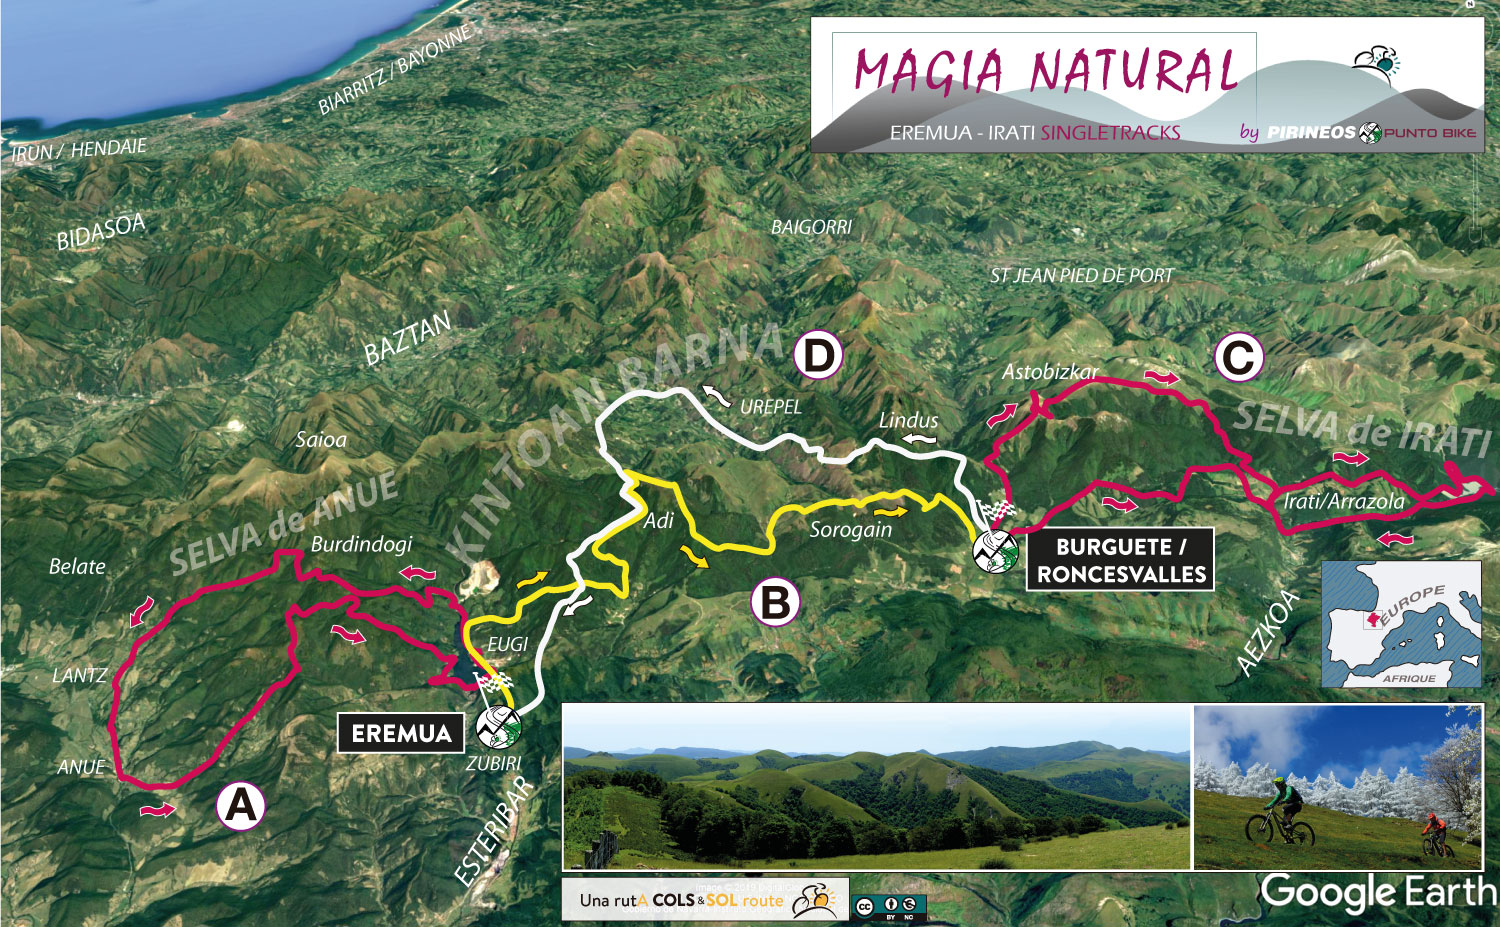 Mapa-Magia-Natural-Eremua-Roncesvalles-mtb-ruta